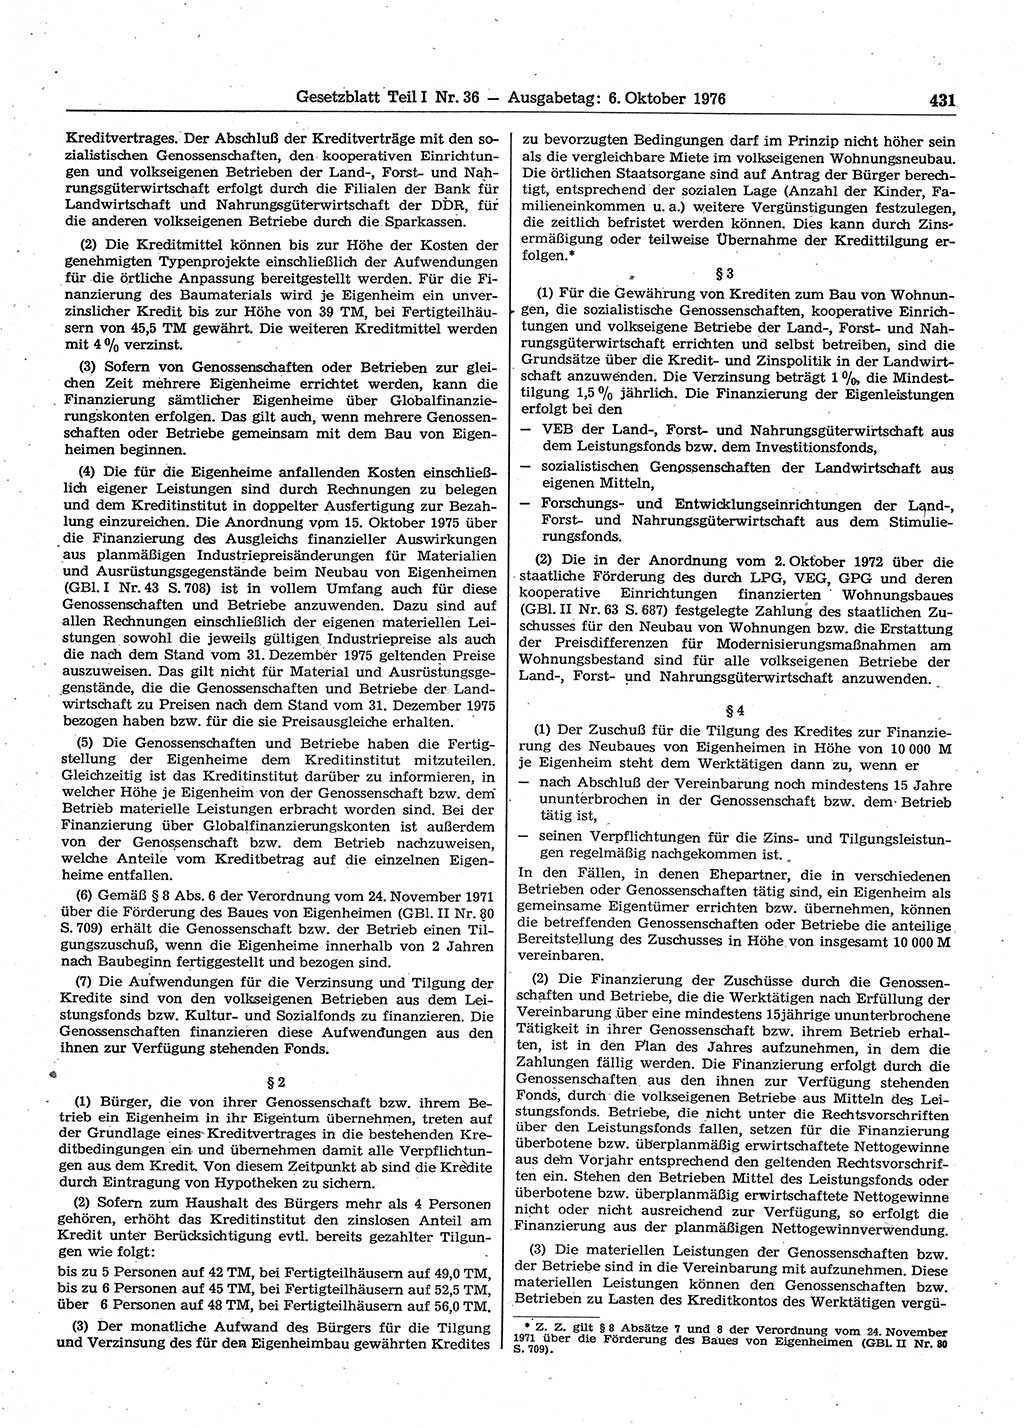 Gesetzblatt (GBl.) der Deutschen Demokratischen Republik (DDR) Teil Ⅰ 1976, Seite 431 (GBl. DDR Ⅰ 1976, S. 431)